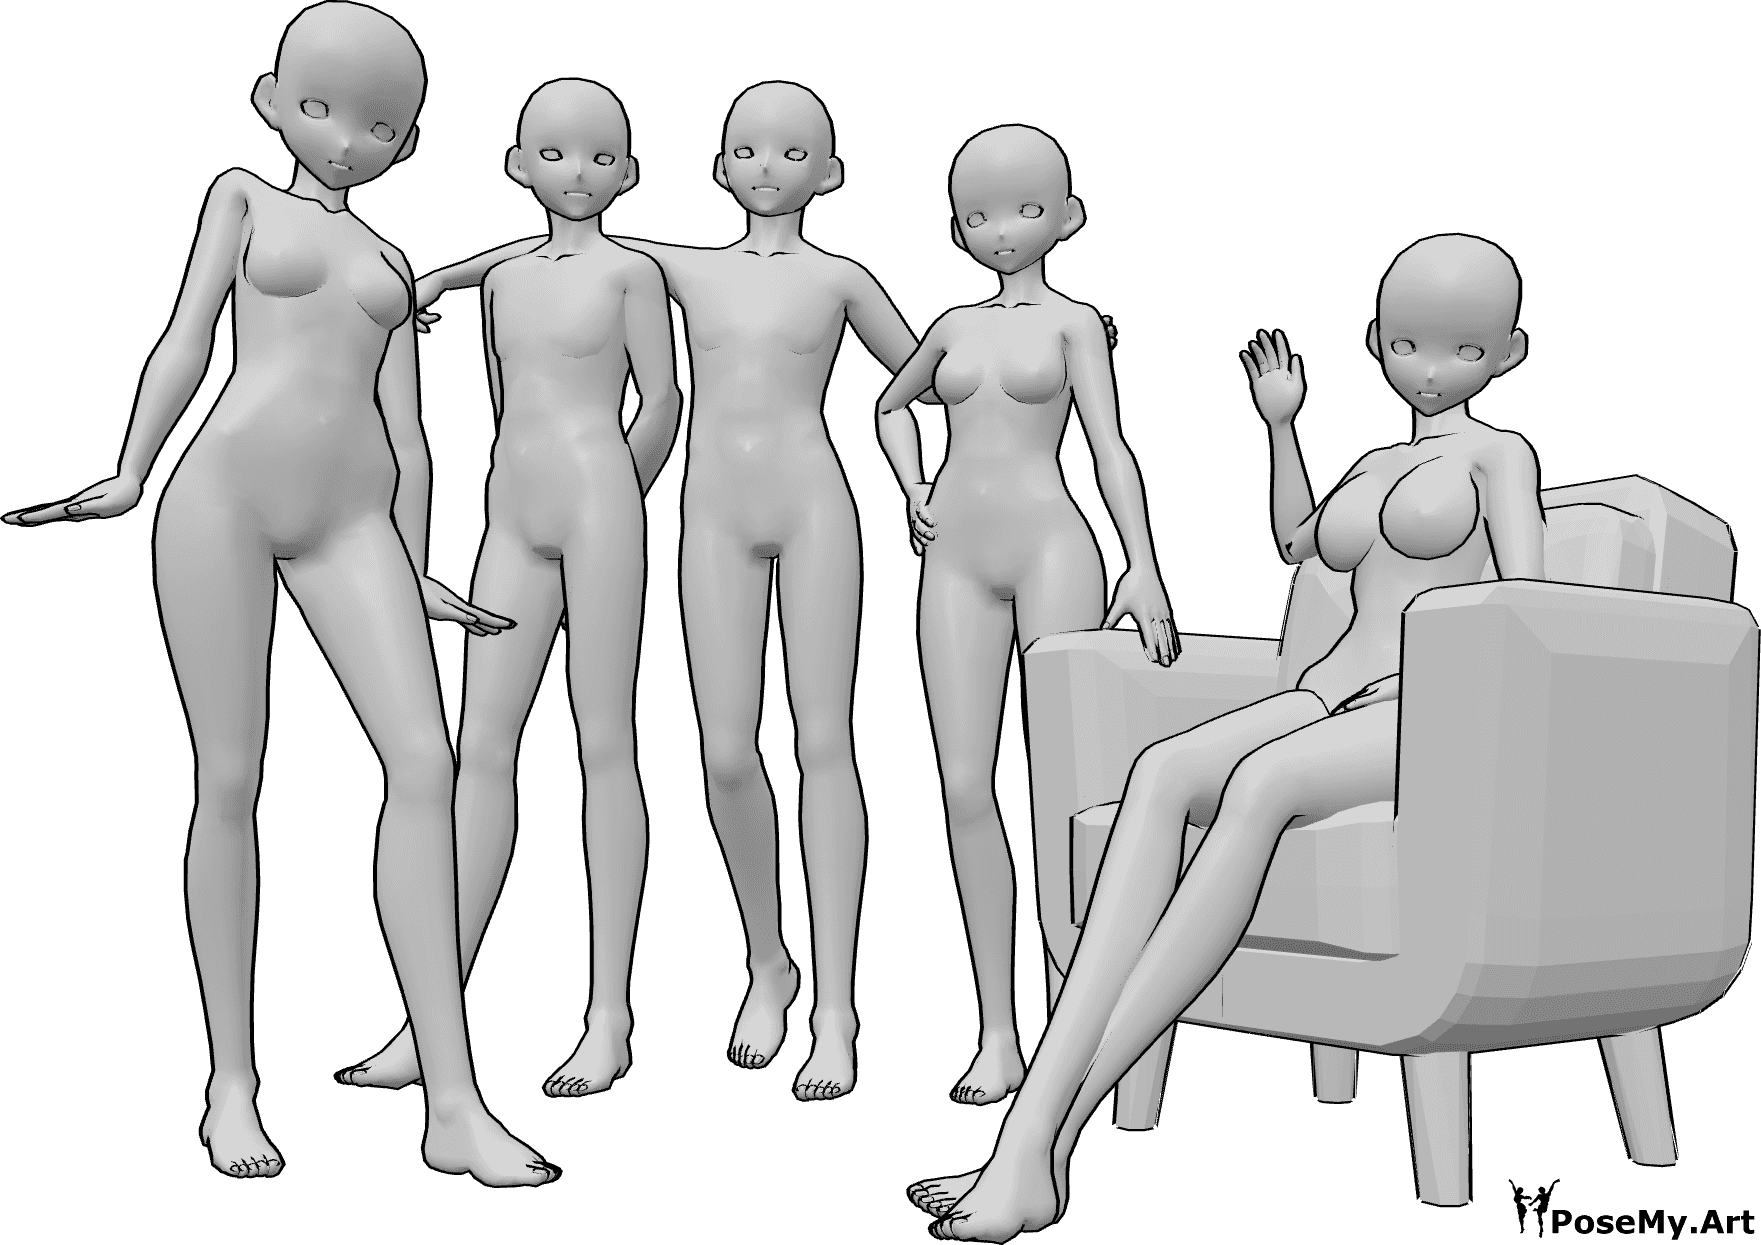 Referencia de poses- Pose de grupo anime - Grupo de cinco mujeres y hombres anime posando para una foto de grupo, sentados y de pie.